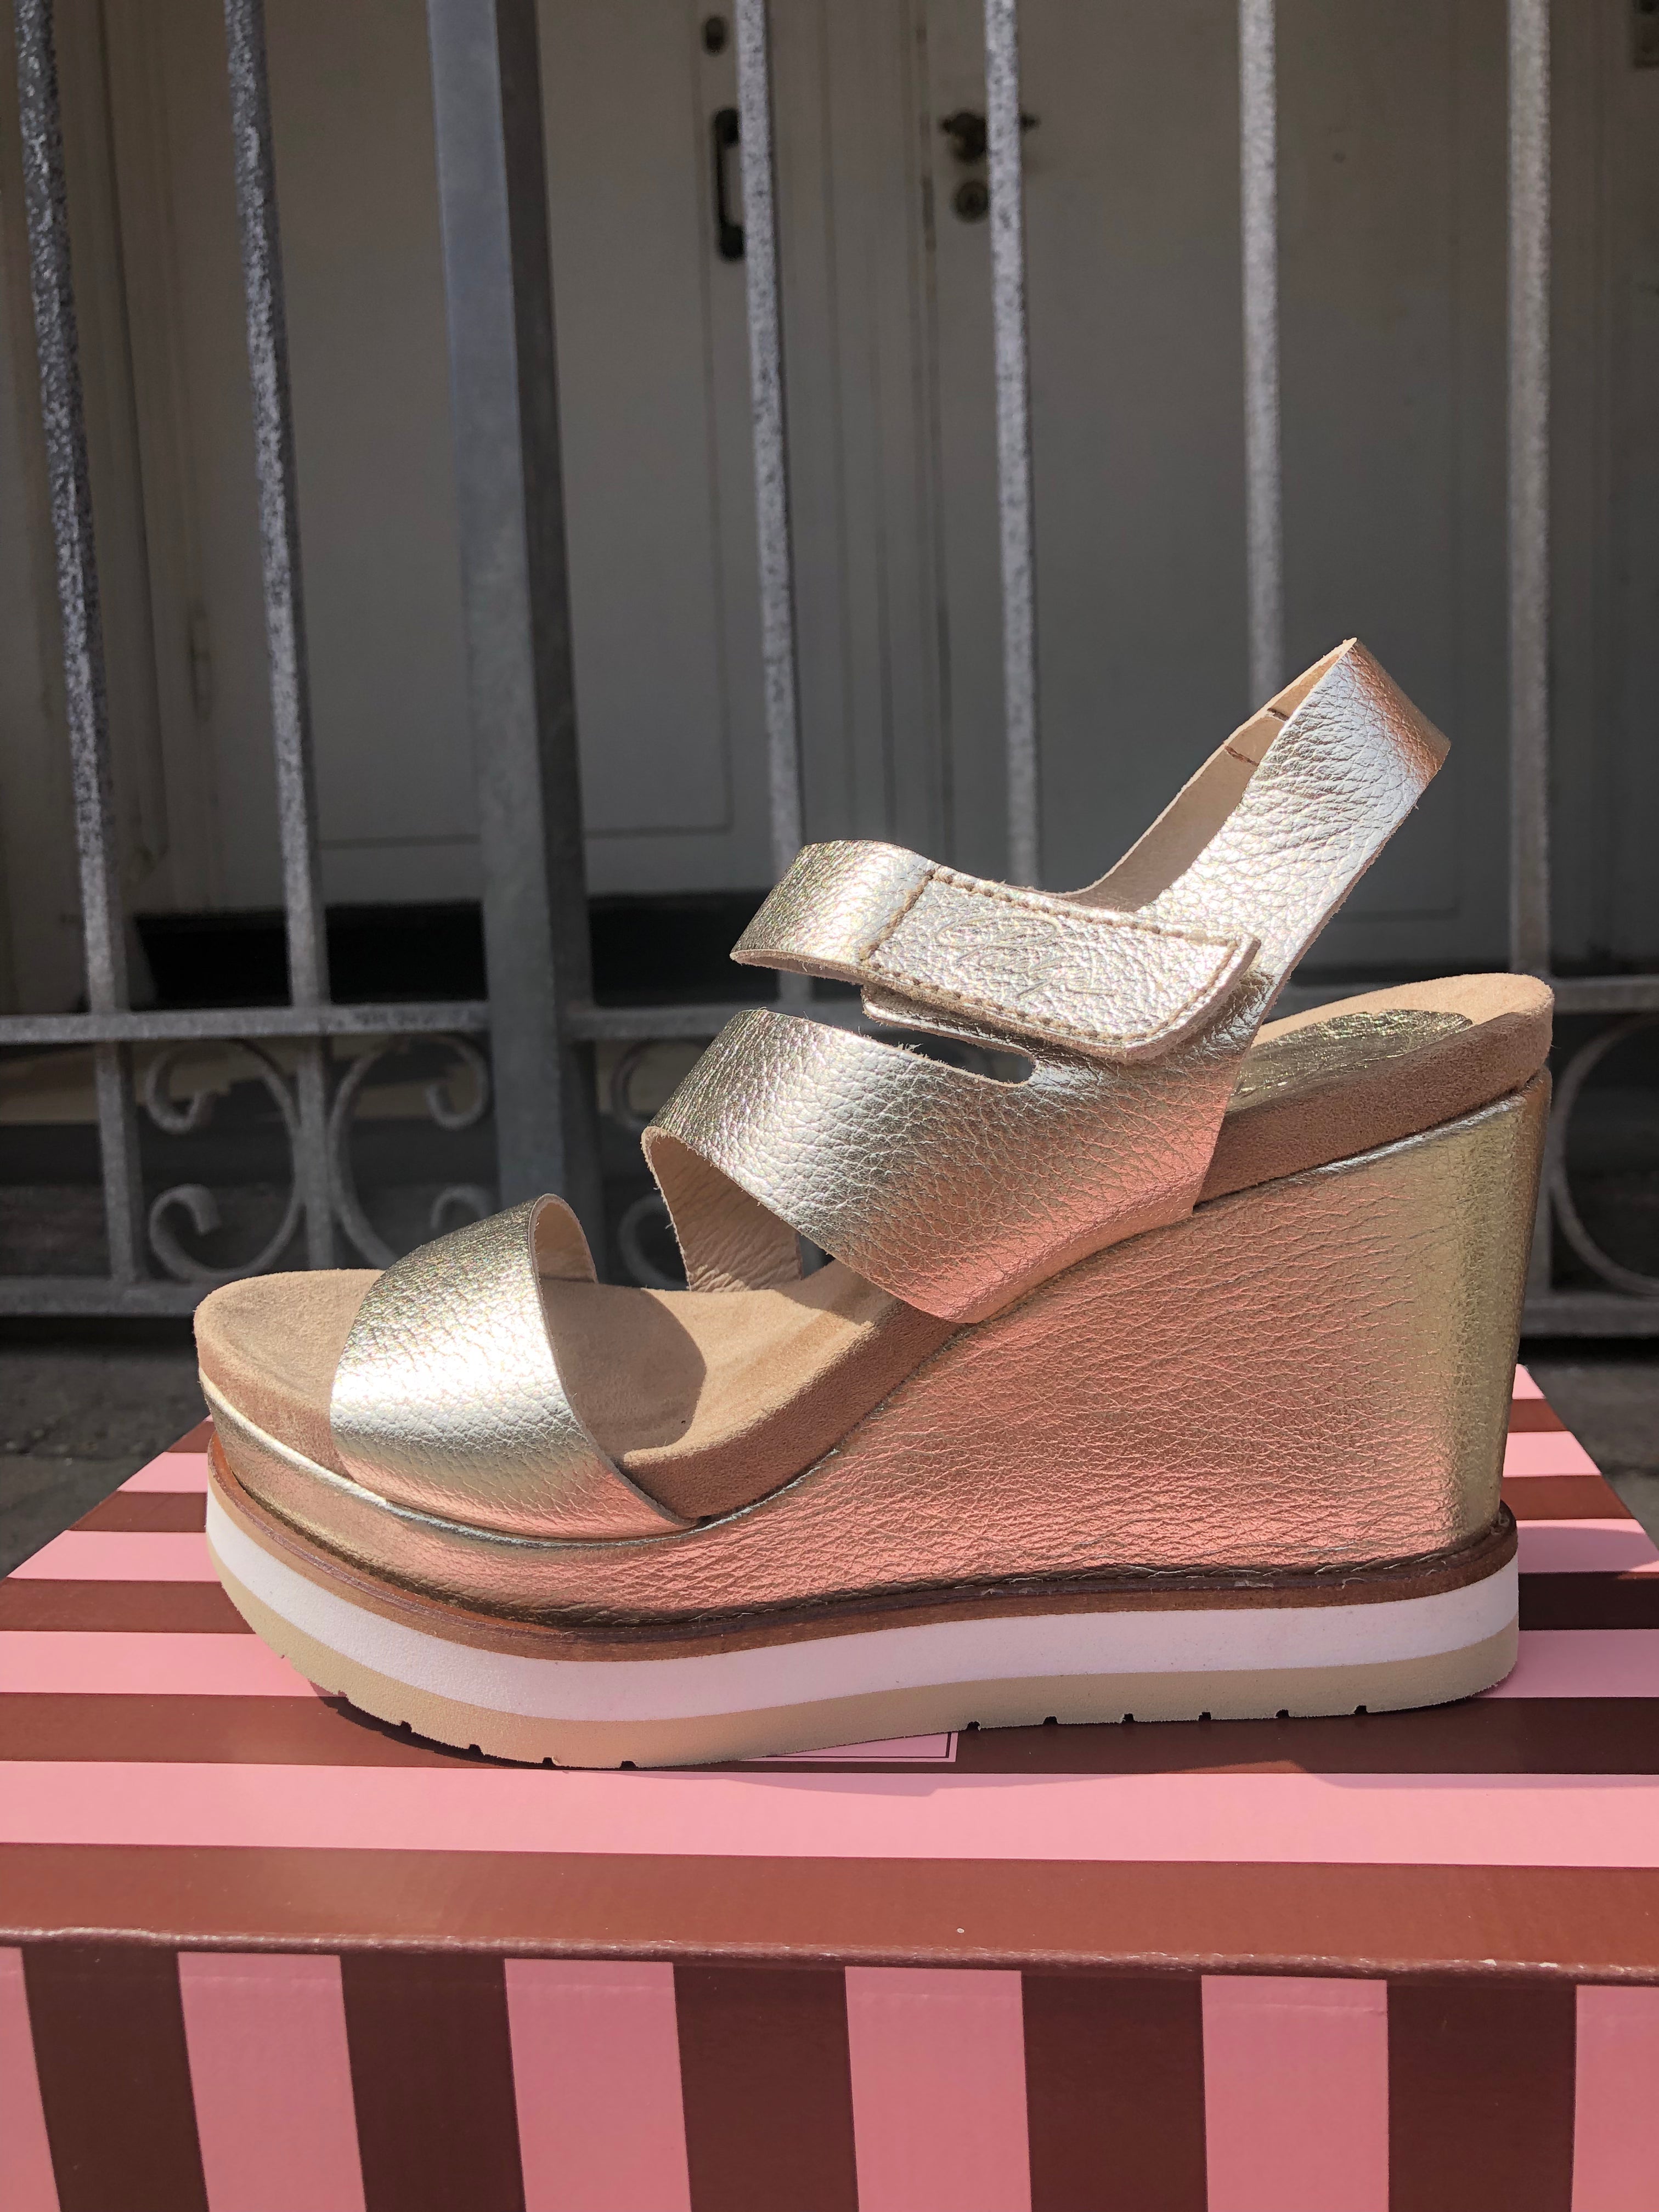 Legende Zoom ind edderkop Penelope Shoes - 5007 Piel High Galaxy Gold – Butik Emsig